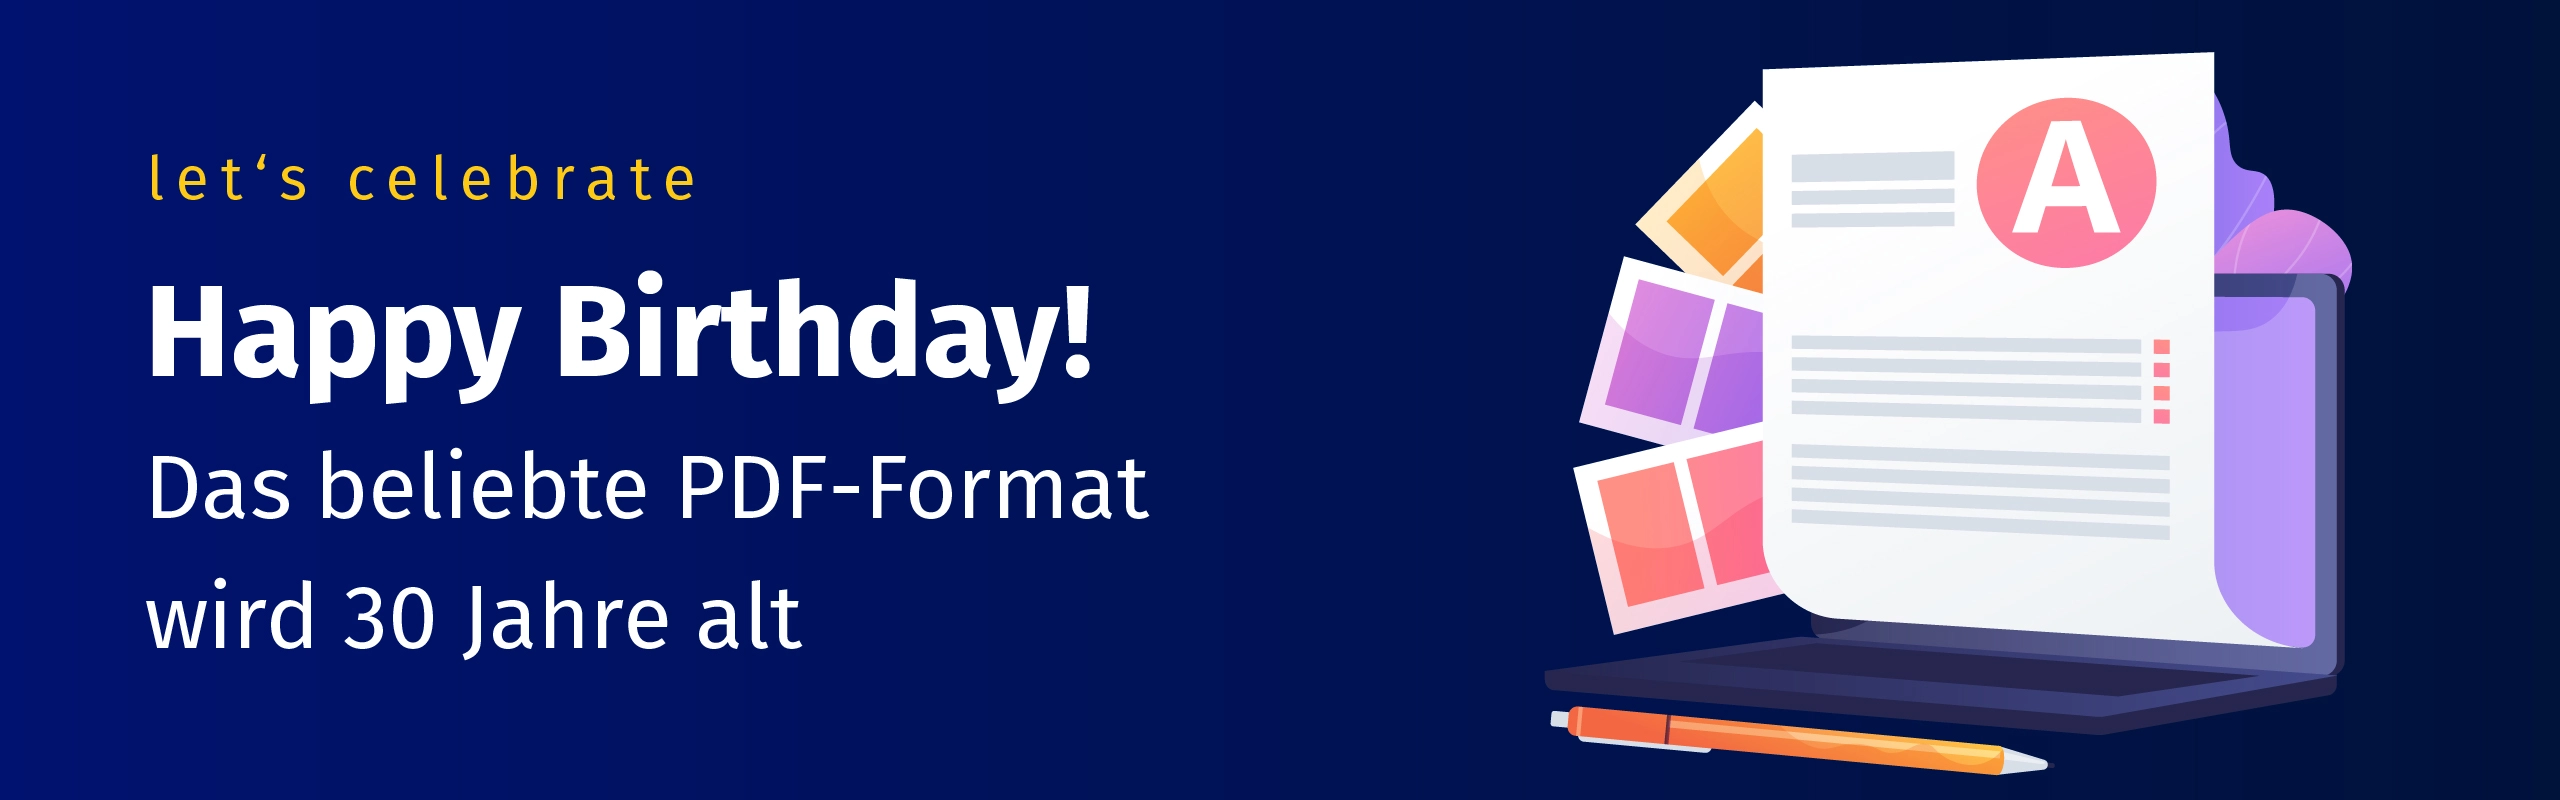 let's celebrate: Happy Borthday! Das beliebte PDF-Format wird 30 Jahre alt.